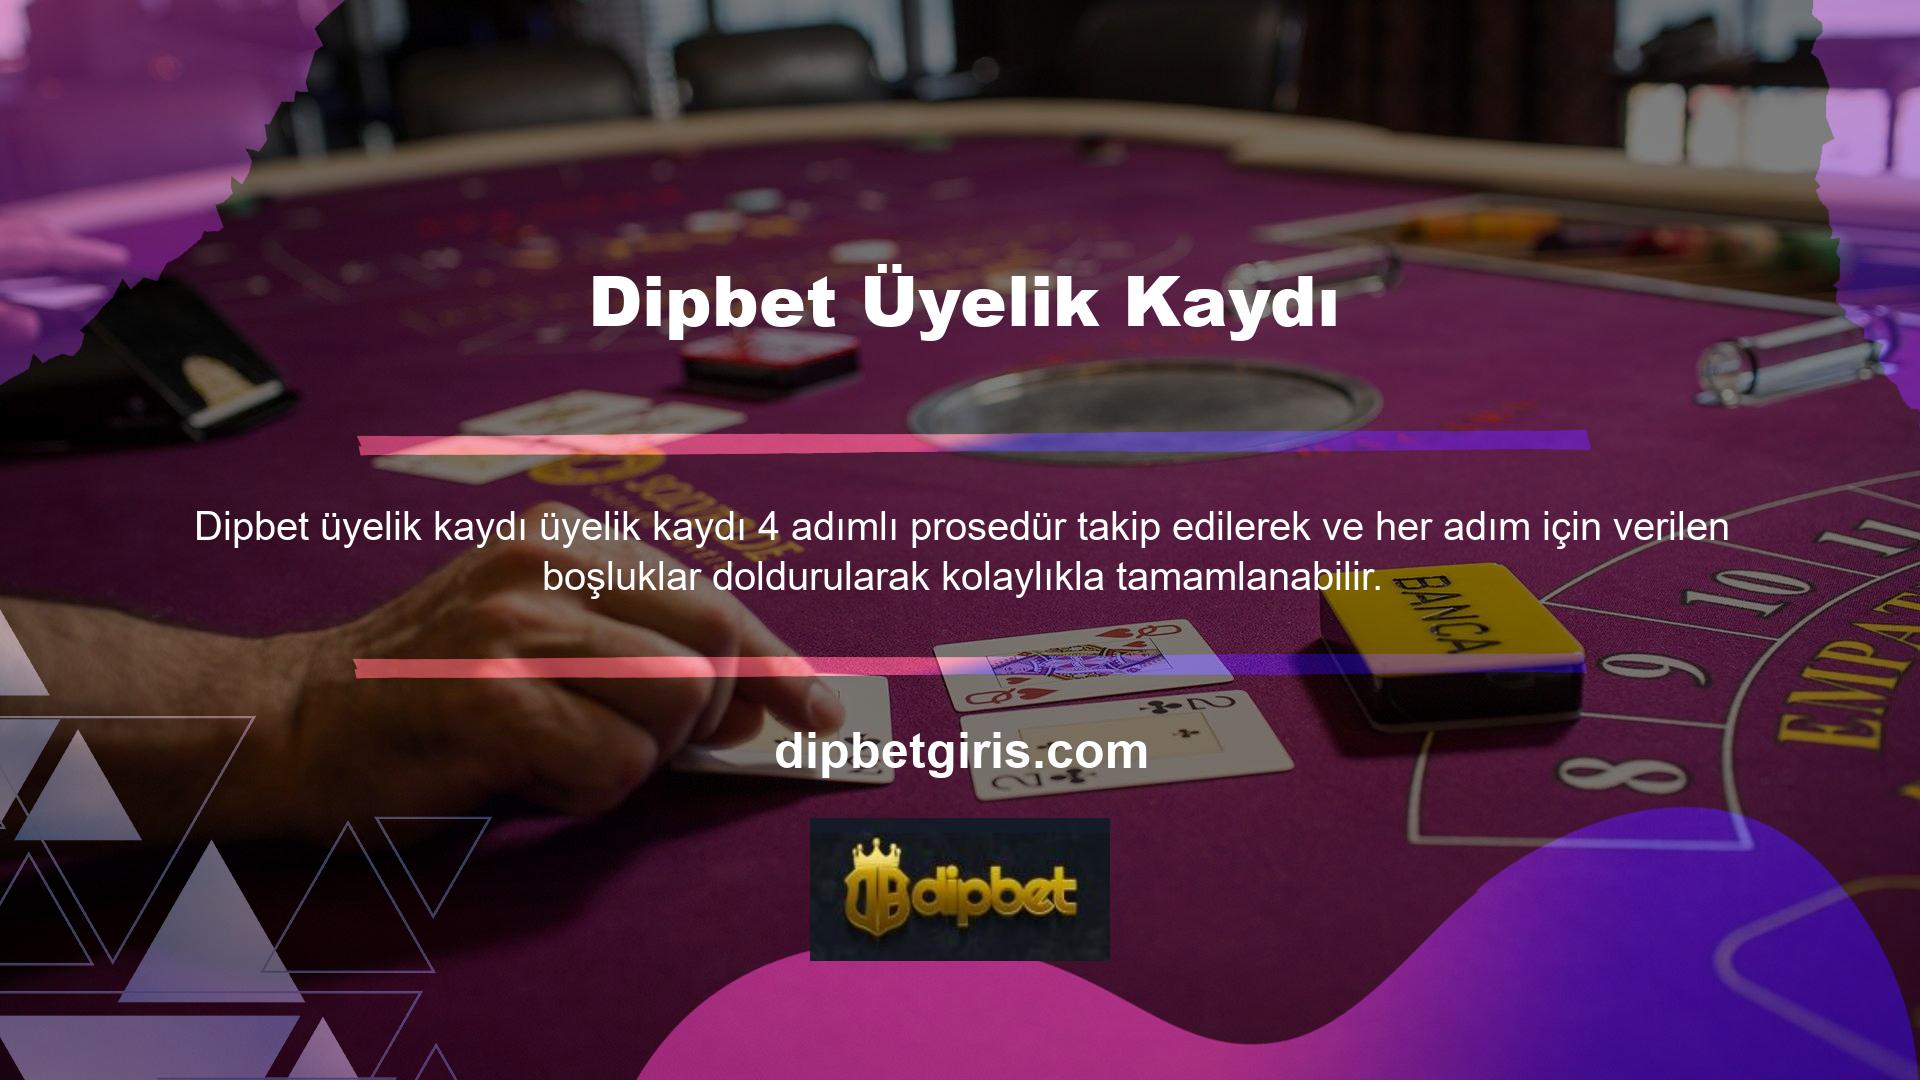 Dipbet canlı bahis ve casino oyun sitesi, müşterilerine sunduğu hizmetlerden dolayı bahis sitesi pazarında oldukça popülerdir ve diğer sitelerden farklıdır